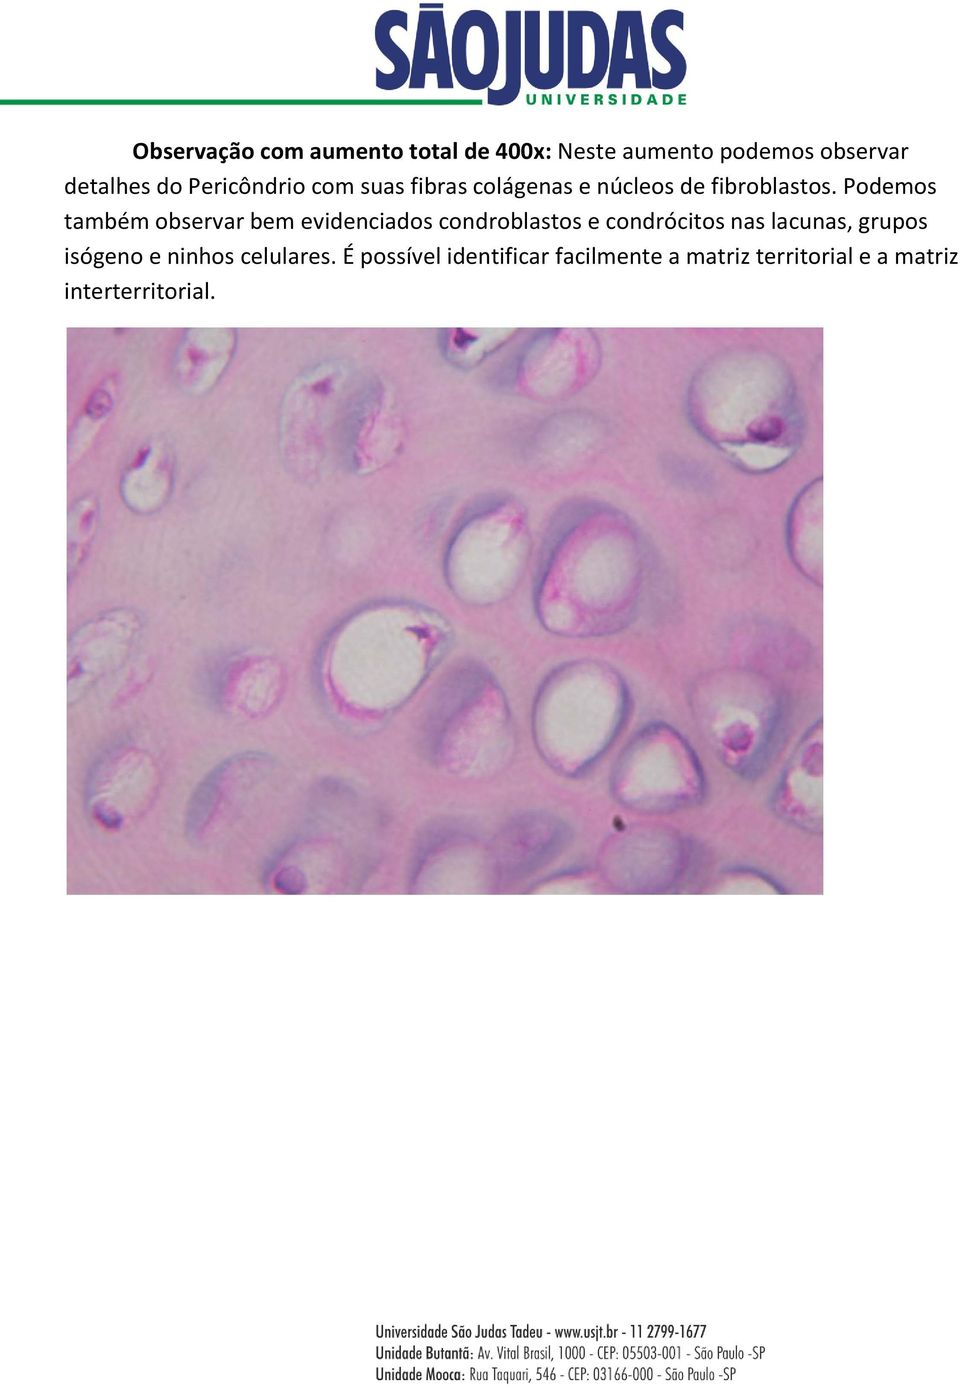 Podemos também observar bem evidenciados condroblastos e condrócitos nas lacunas,